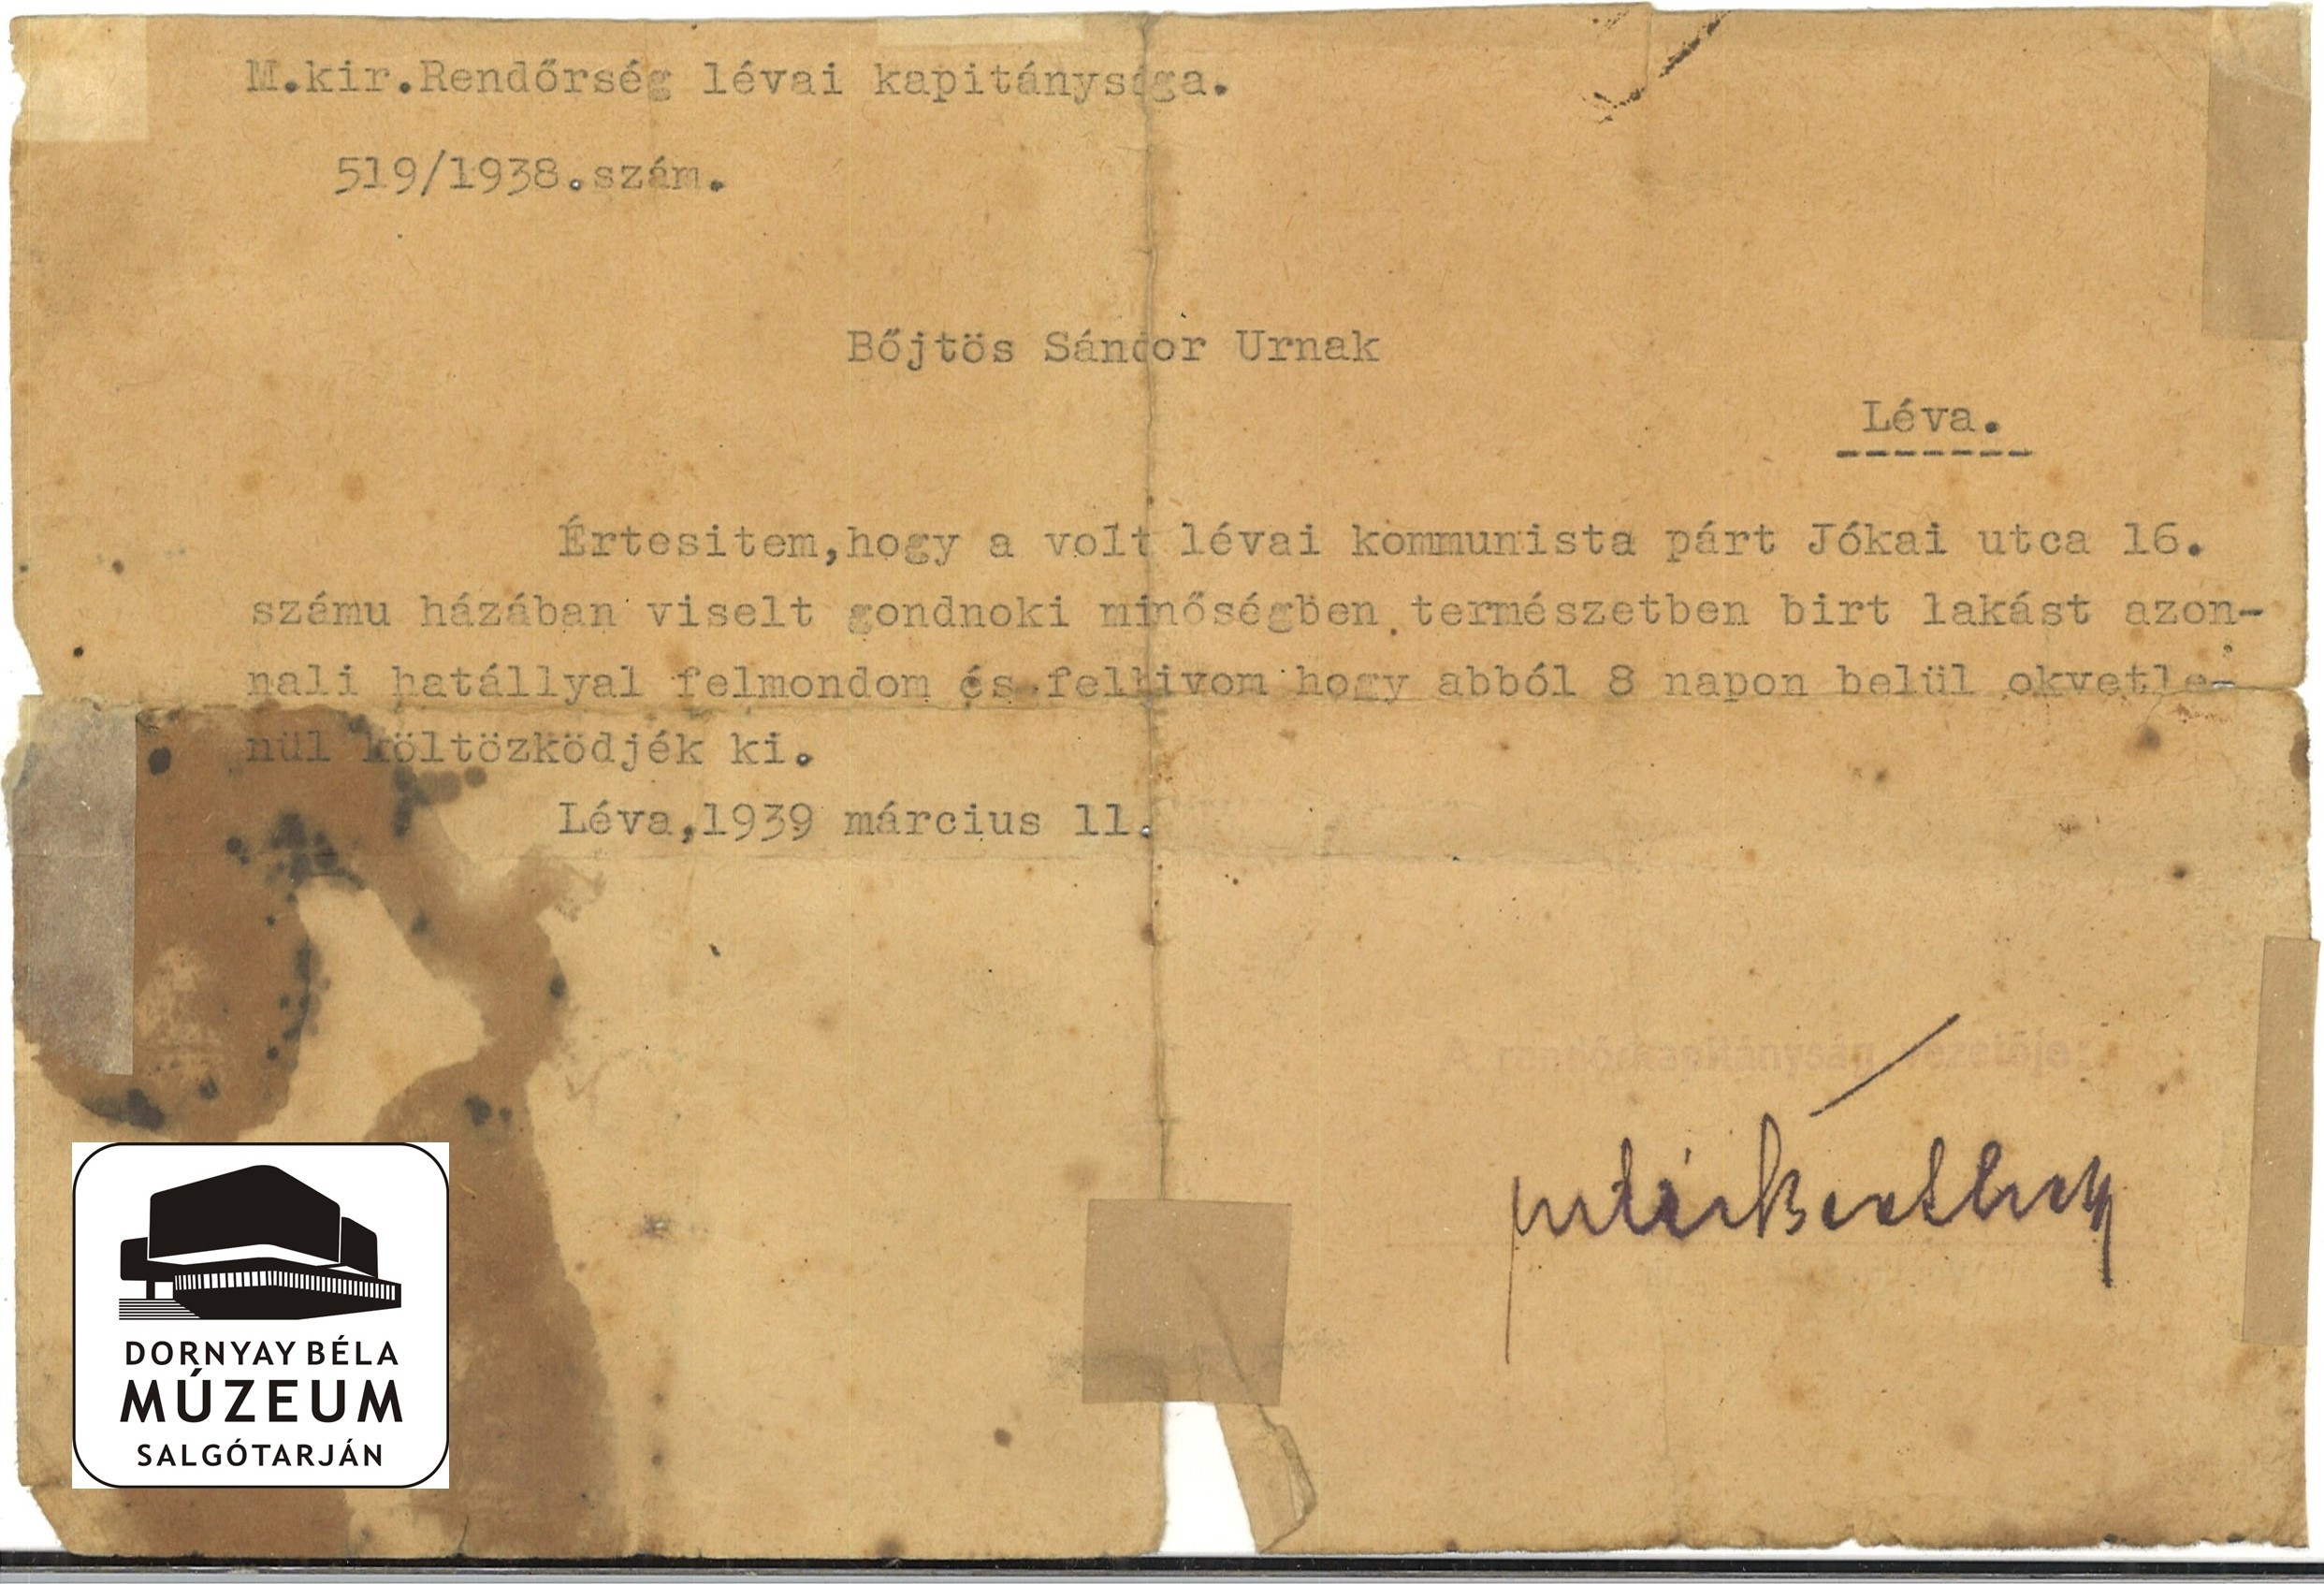 Böjtös Sándor lakás felmondása a rendőrkapitányság által (Dornyay Béla Múzeum, Salgótarján CC BY-NC-SA)